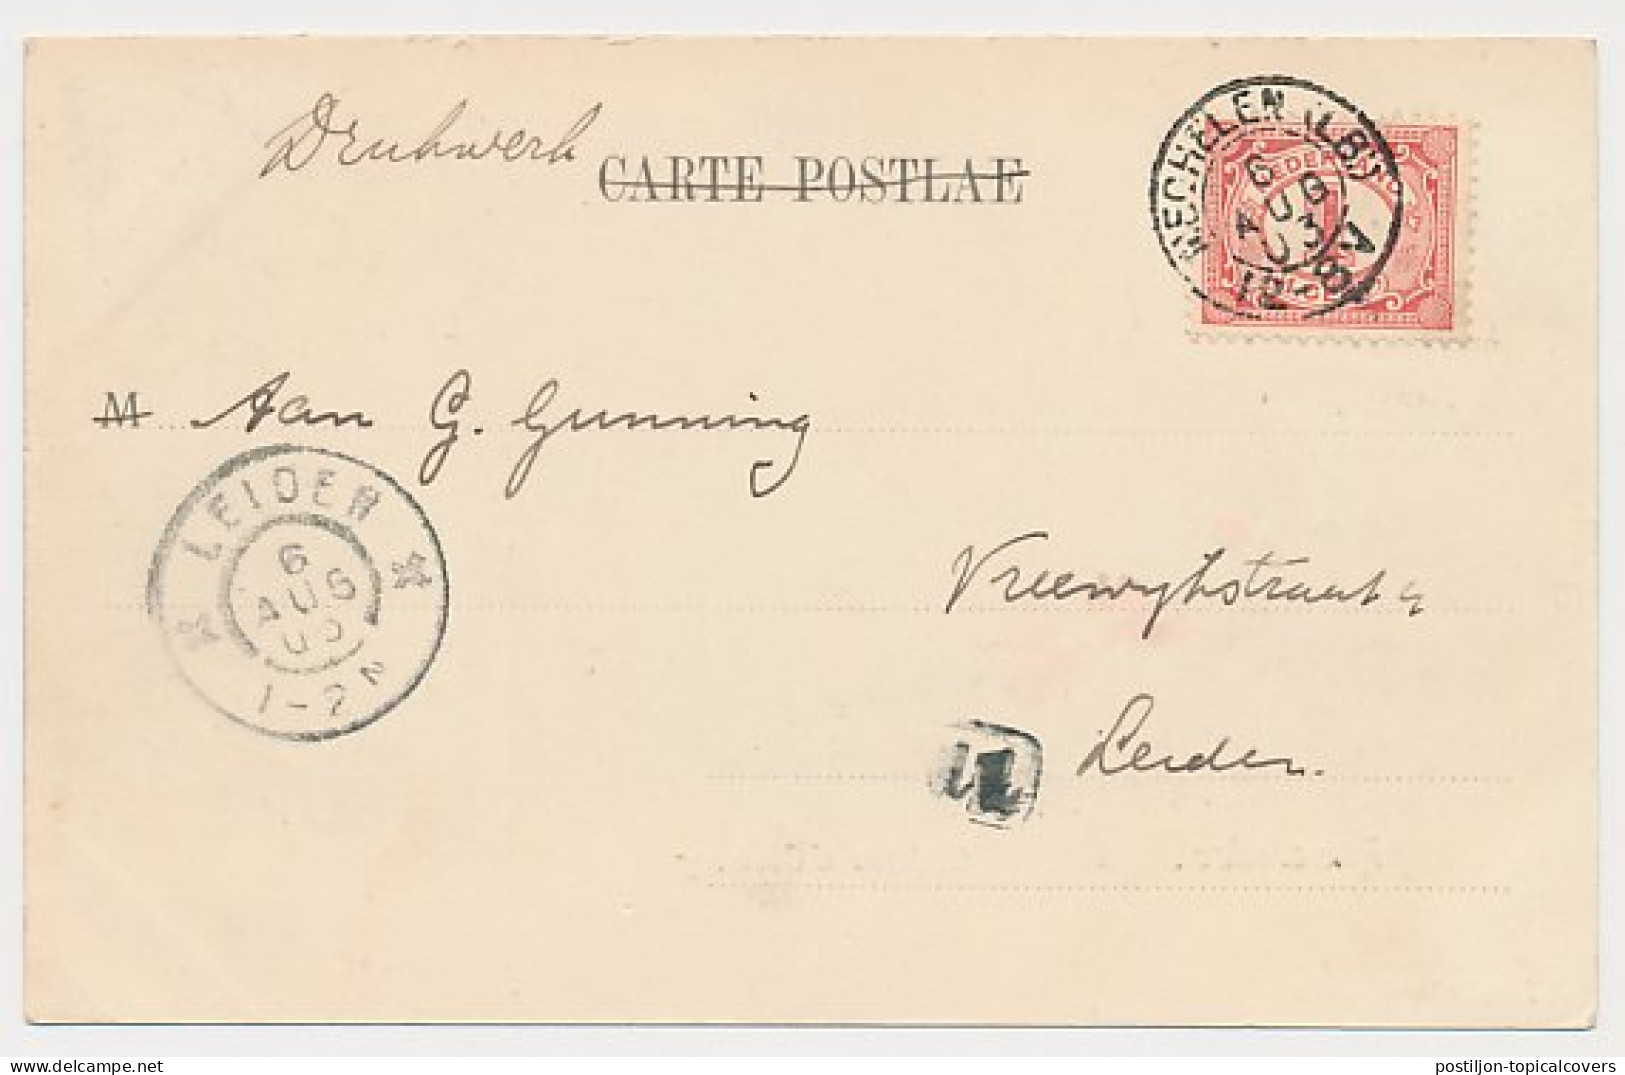 Kleinrondstempel Mechelen (LB:) 1903 - Ohne Zuordnung